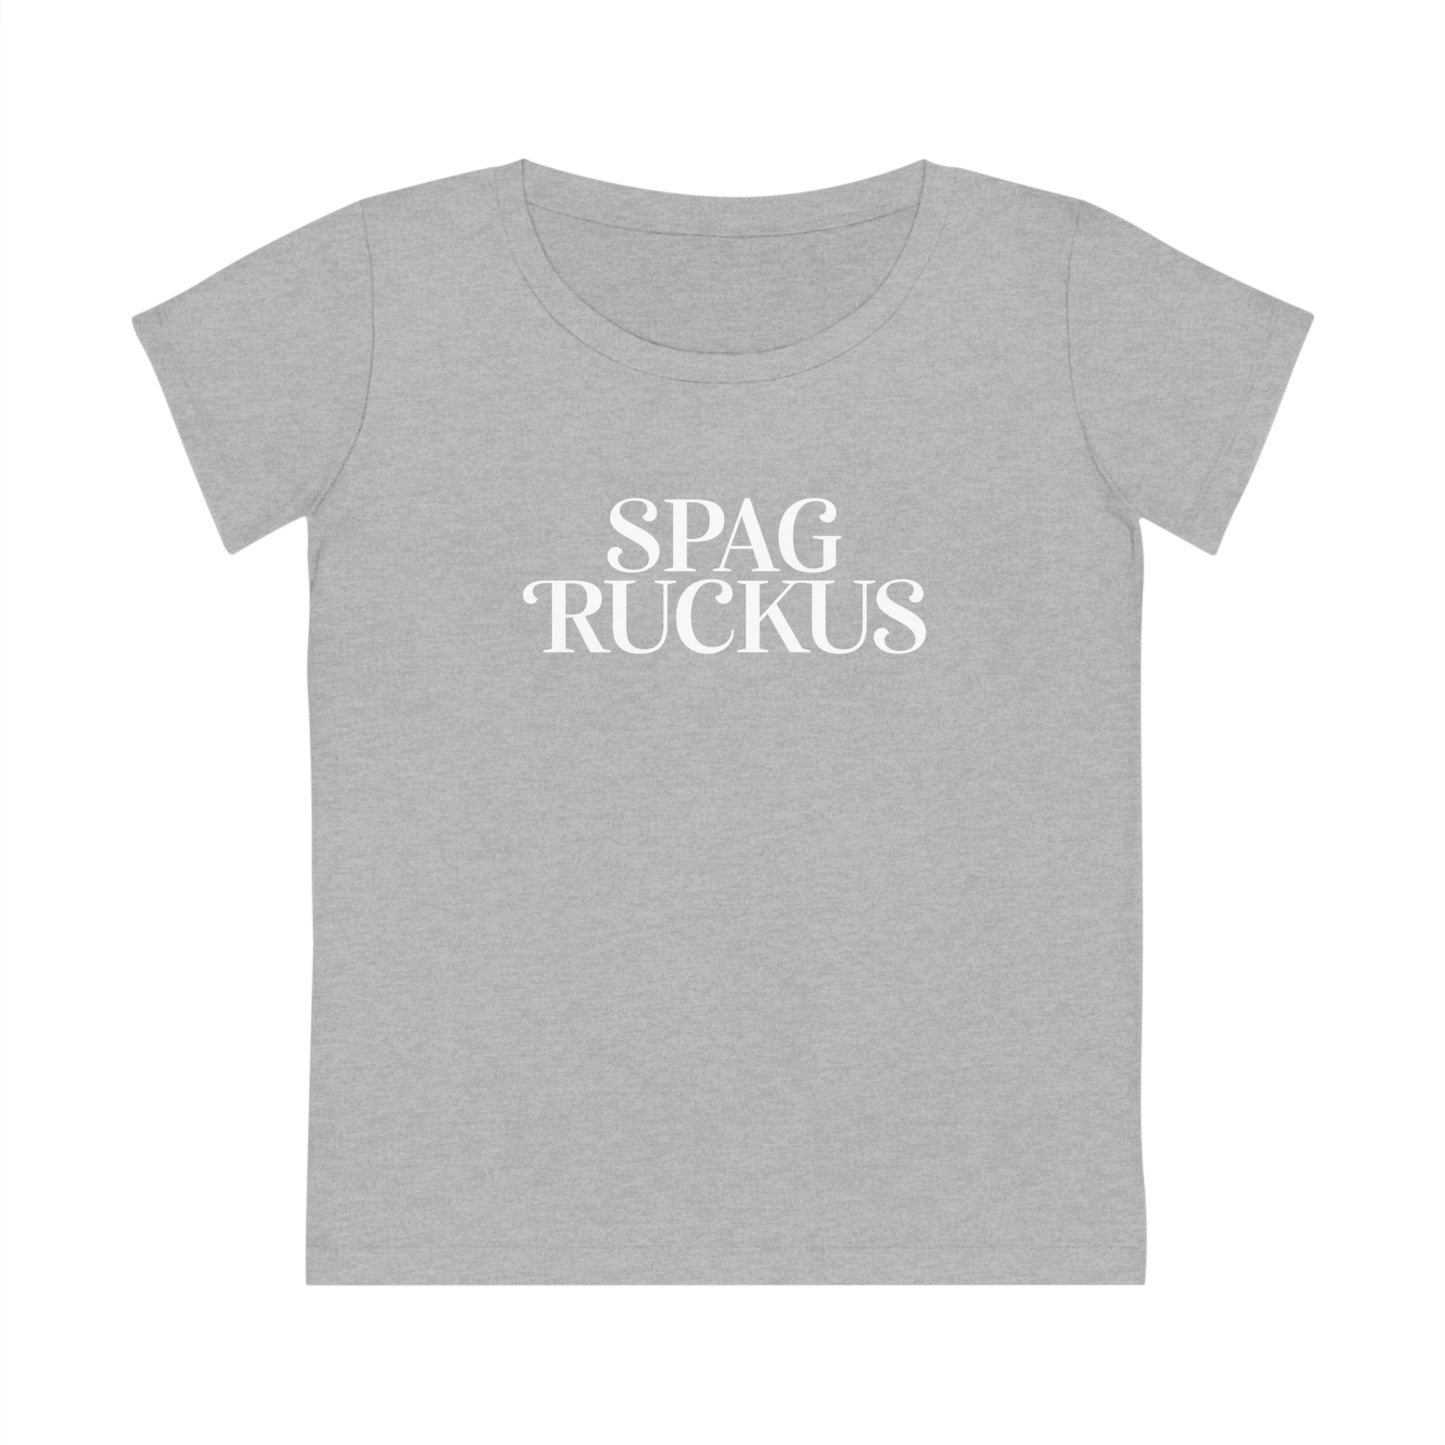 EUROPE - Spag Ruckus classic - Organic Women's T-shirt